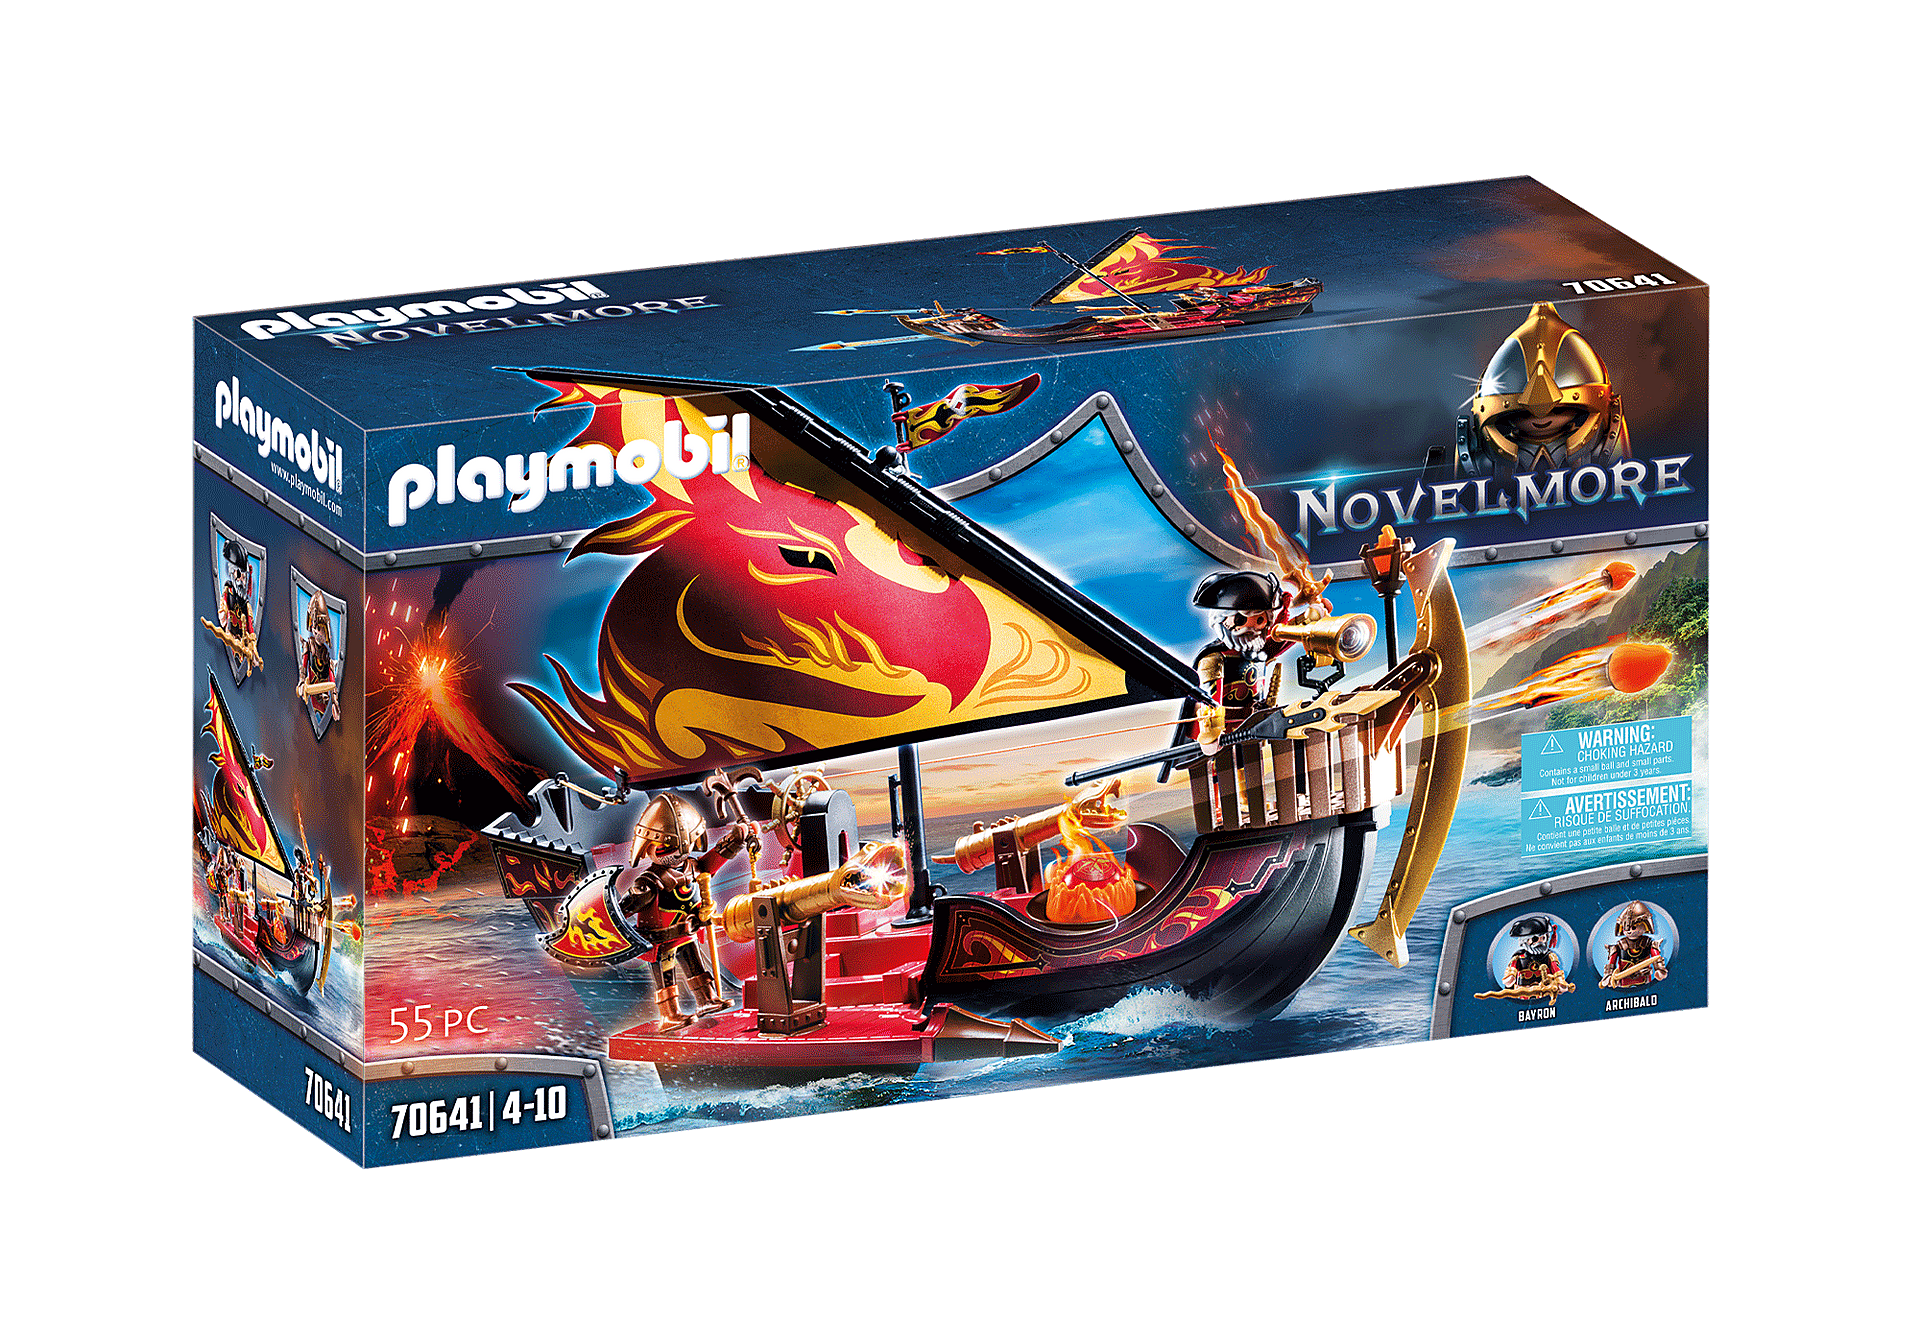 Playmobil Novelmore: Barco Bandidos de Burnham 70641